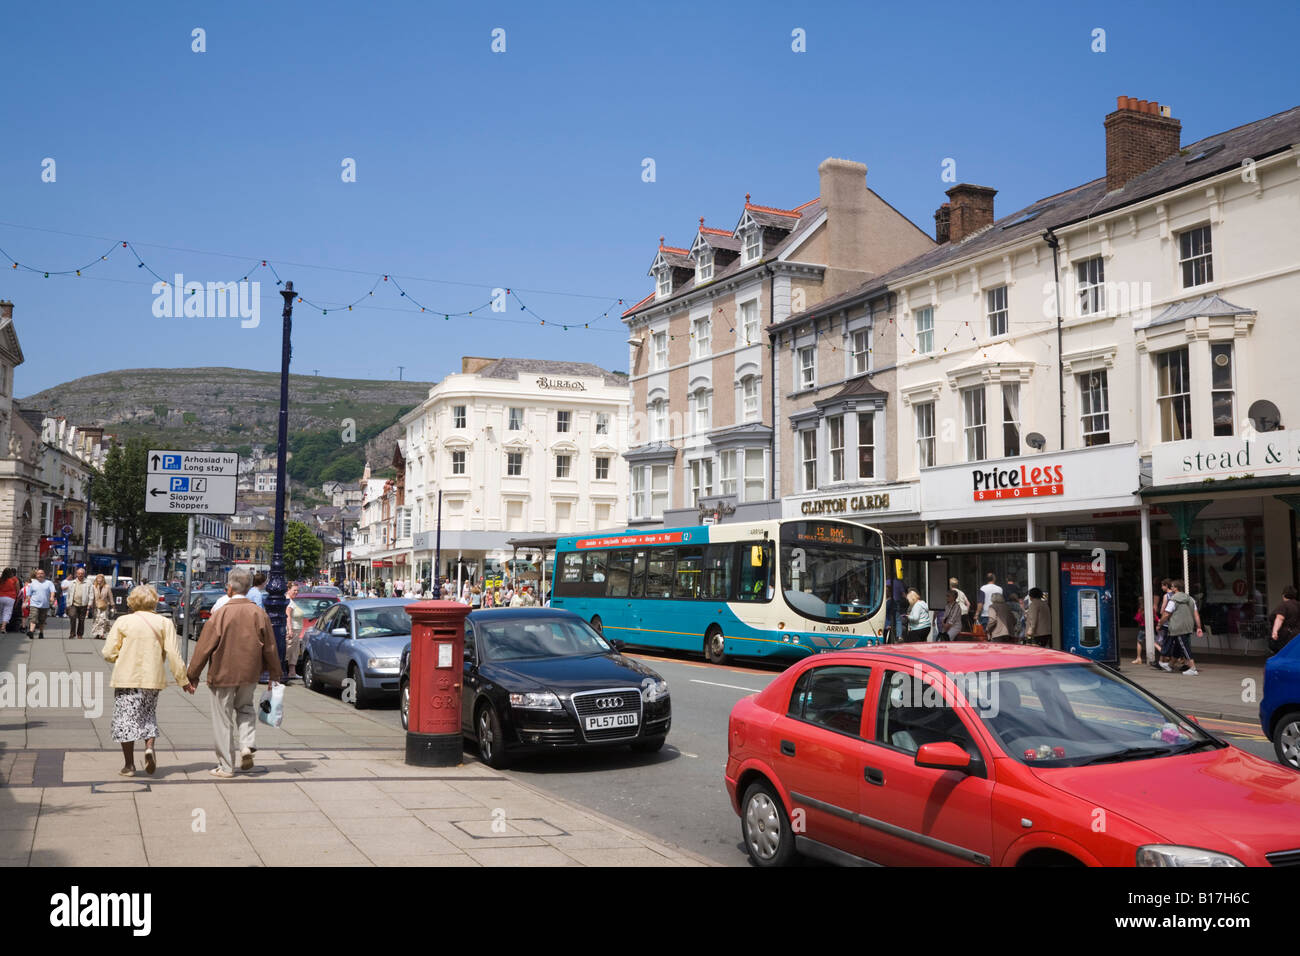 Le trafic et les piétons dans la rue animée avec des magasins en bâtiments victoriens en centre-ville. Llandudno North Wales UK Banque D'Images